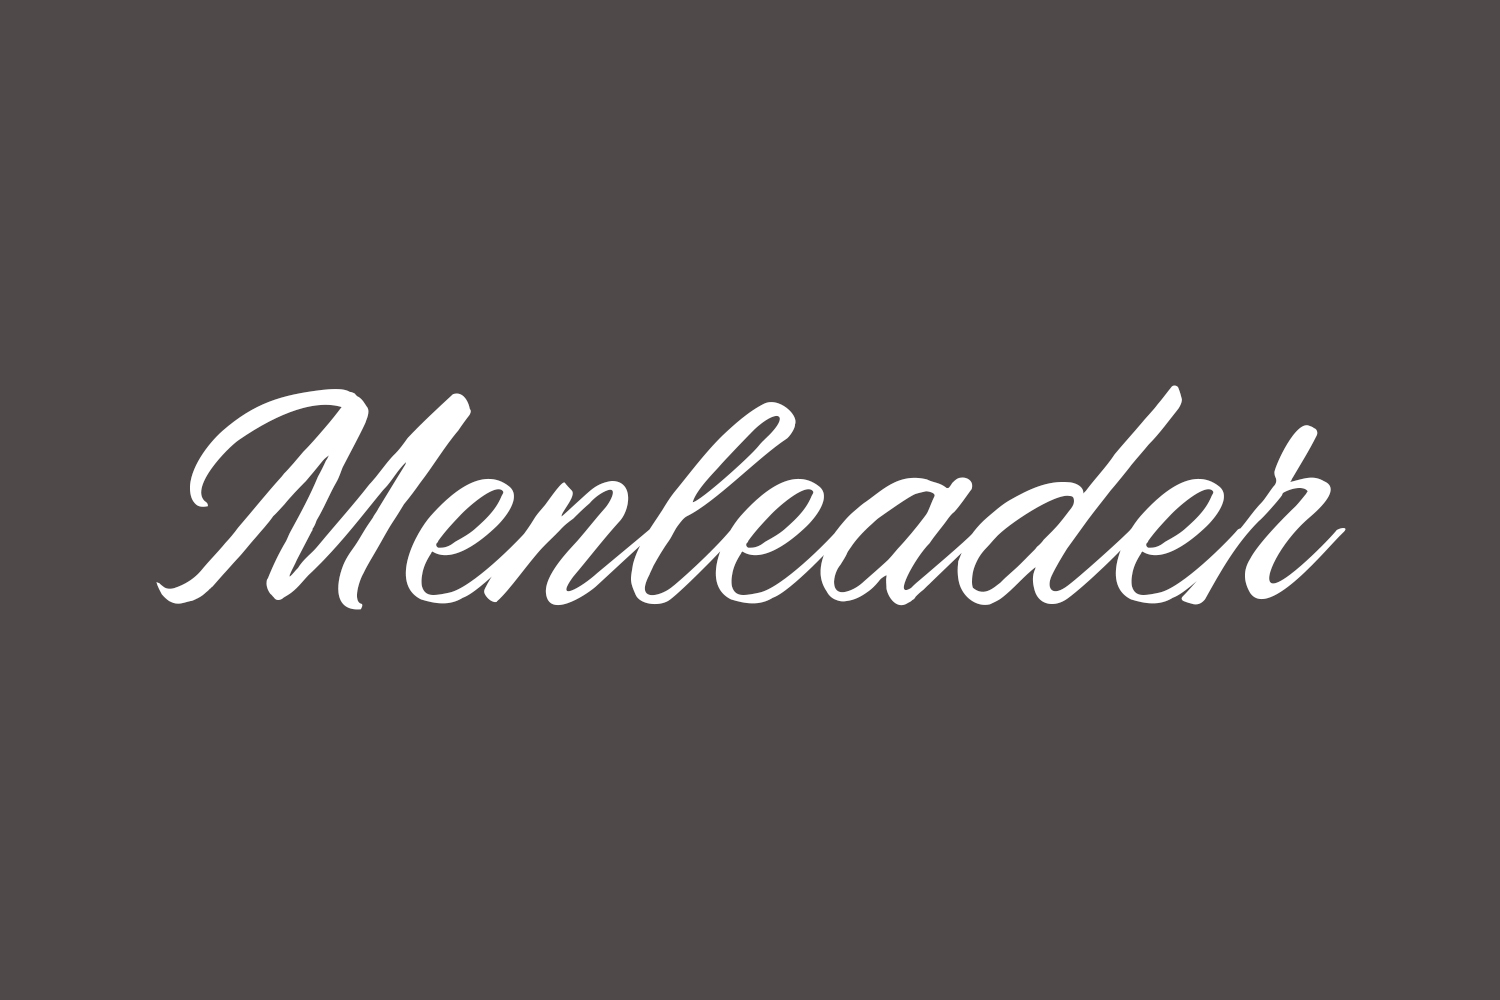 Menleader Free Font